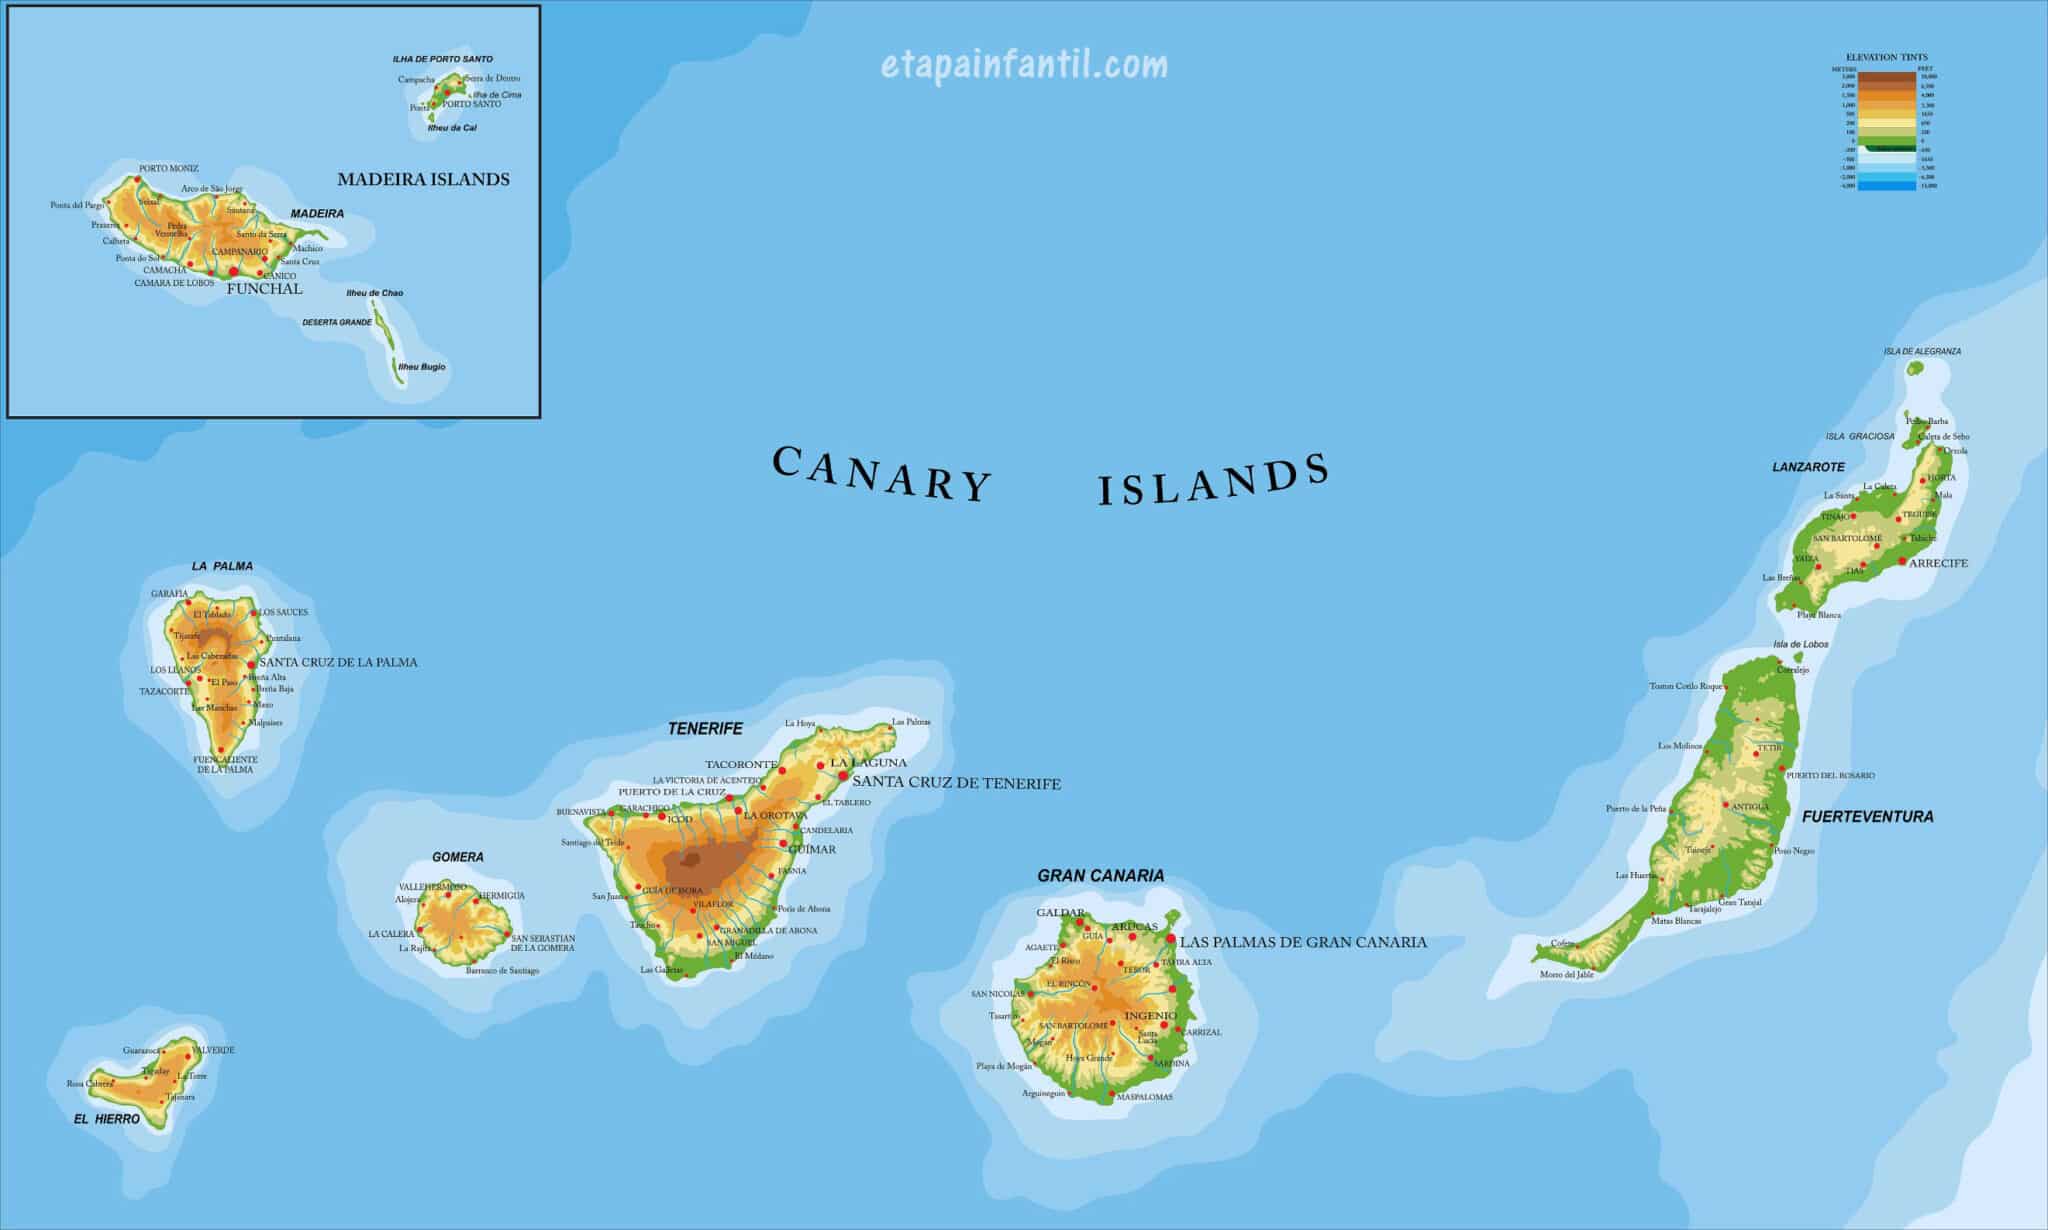 Mapa Las Canarias 